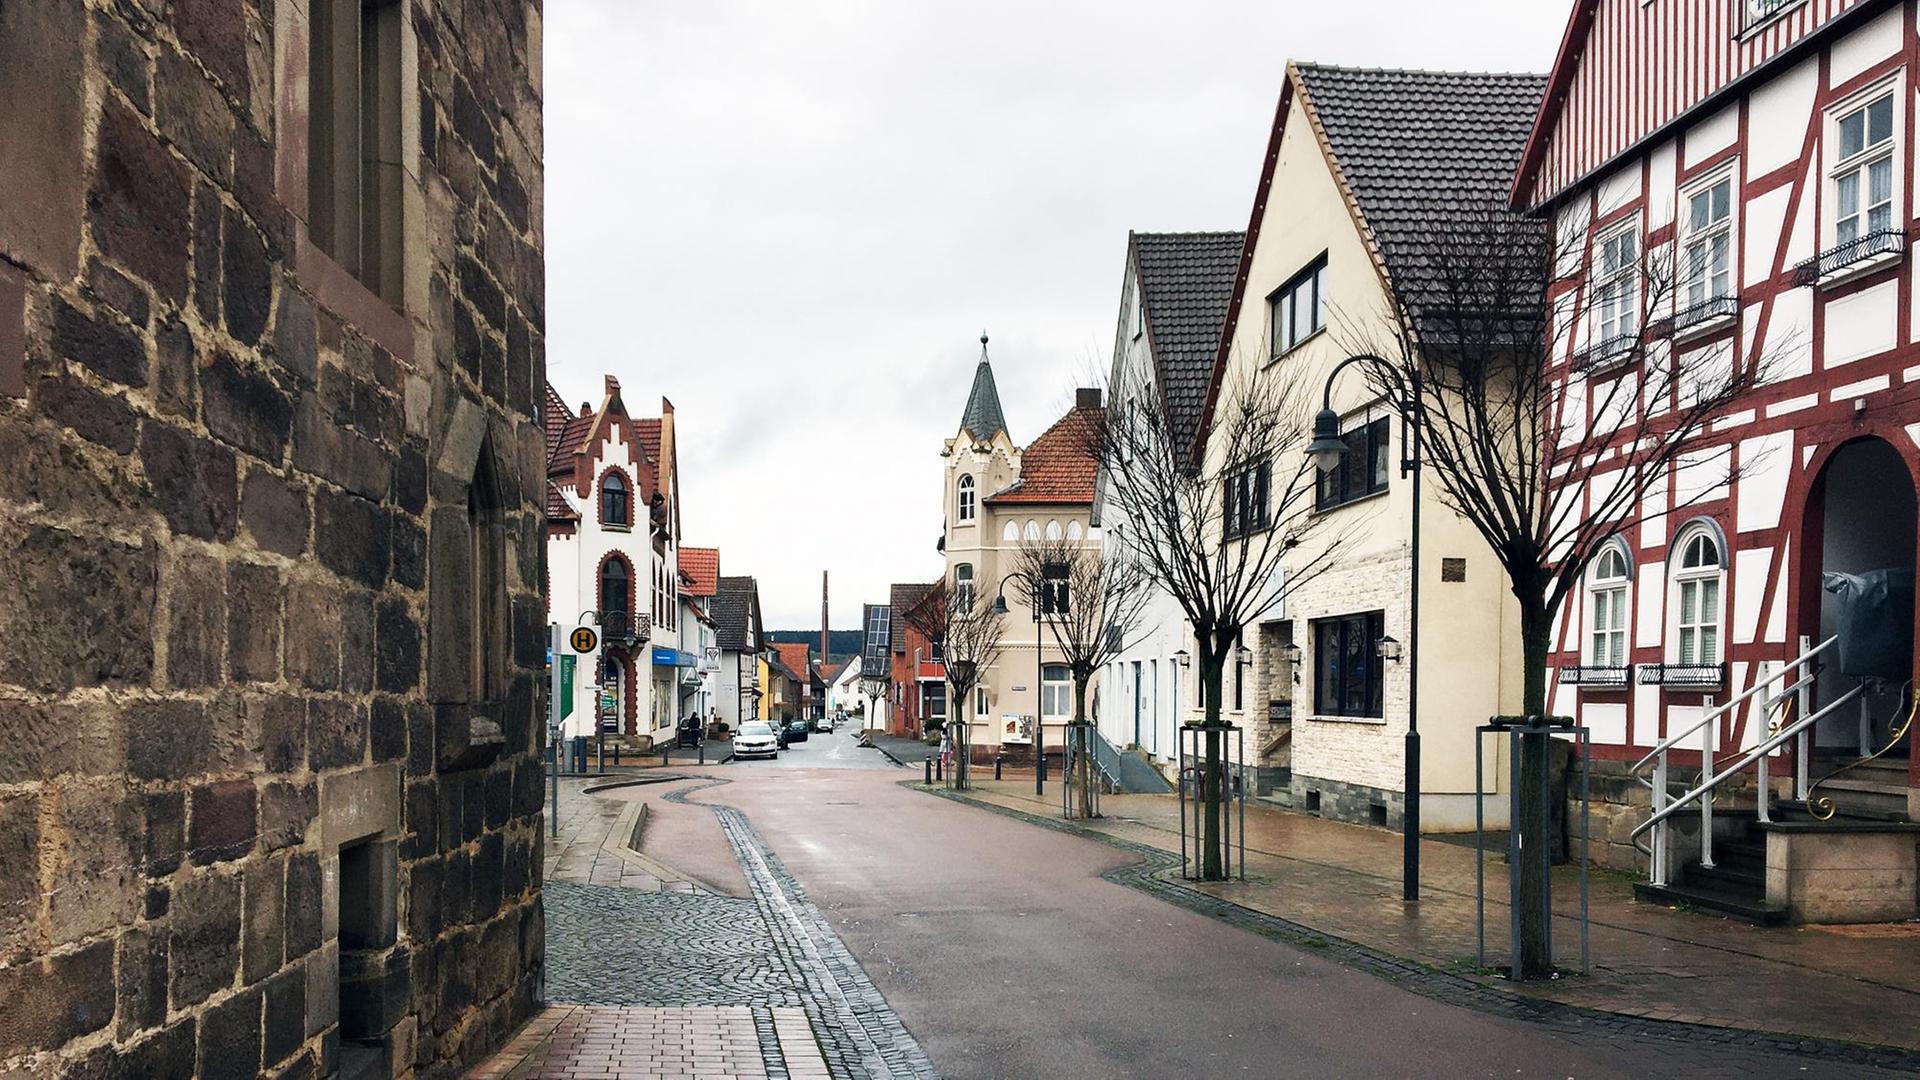 Eine Asphaltstraße führt durch ein Dorf. Das Dorf ist alt: Rechts steht ein Fachwerkhaus. Weitere historische Bauten aus dem späten Mittelater sind zu sehen.